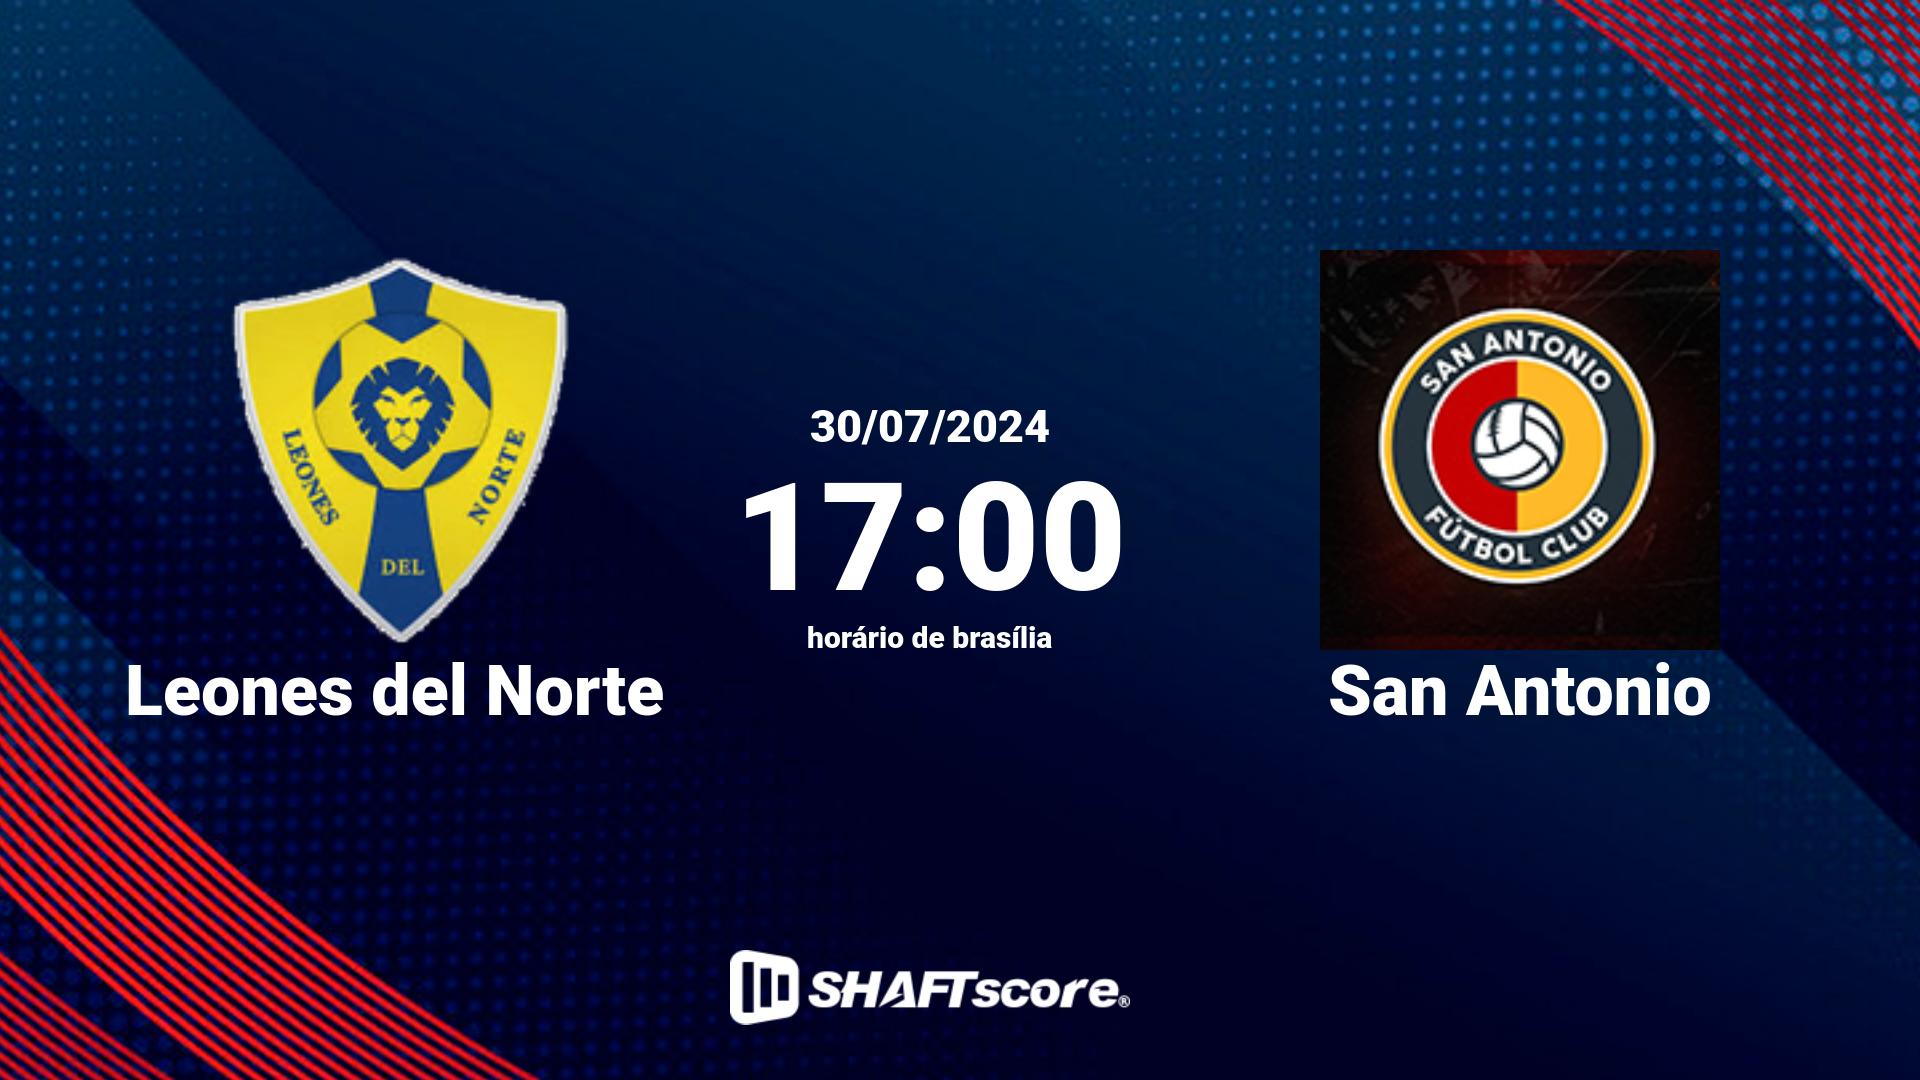 Estatísticas do jogo Leones del Norte vs San Antonio 30.07 17:00